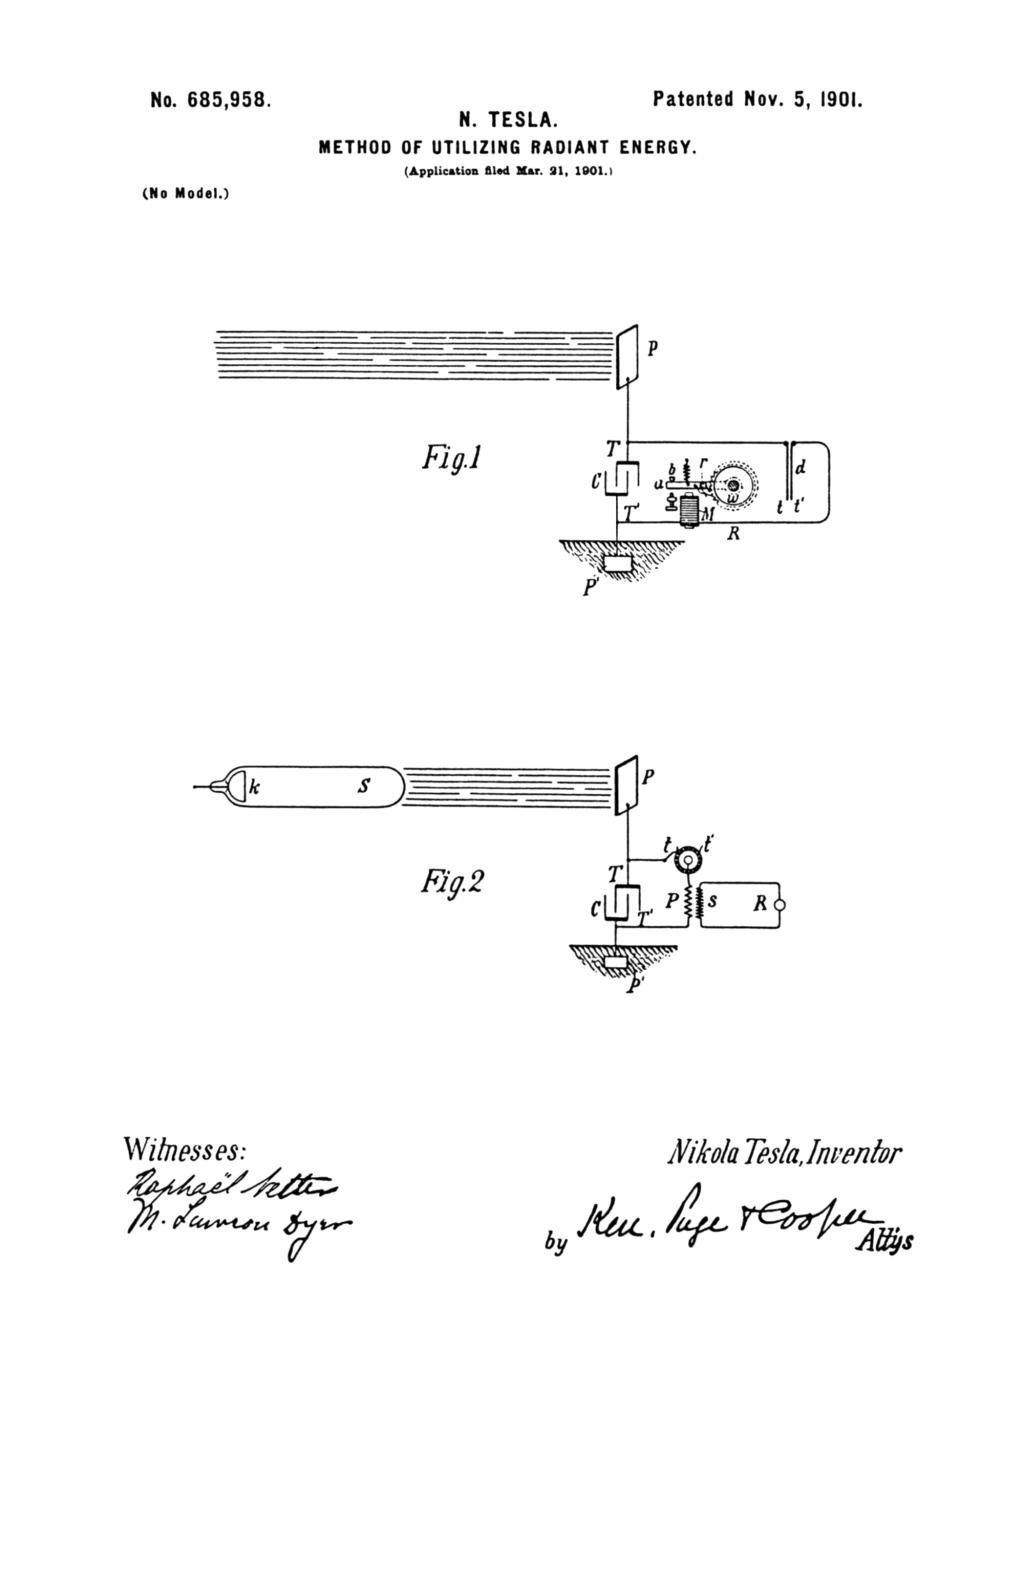 Nikola Tesla U.S. Patent 685,958 - Method of Utilizing of Radiant Energy - Image 1